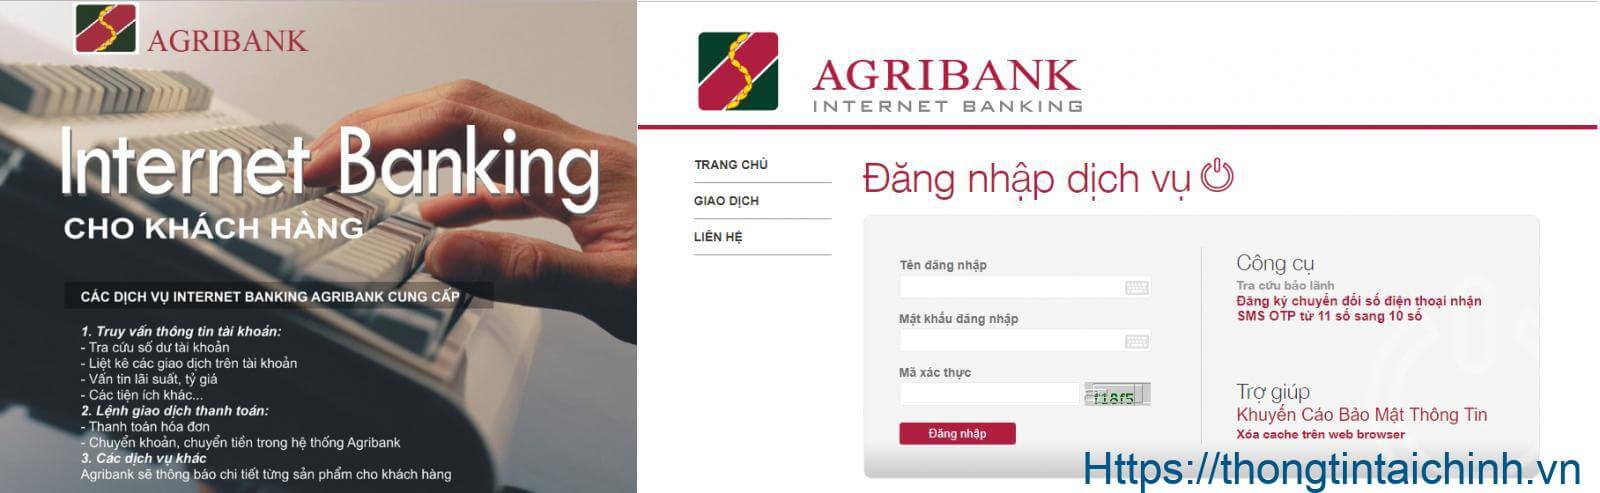 Chuyển khoản ngân hàng Agribank qua điện thoại